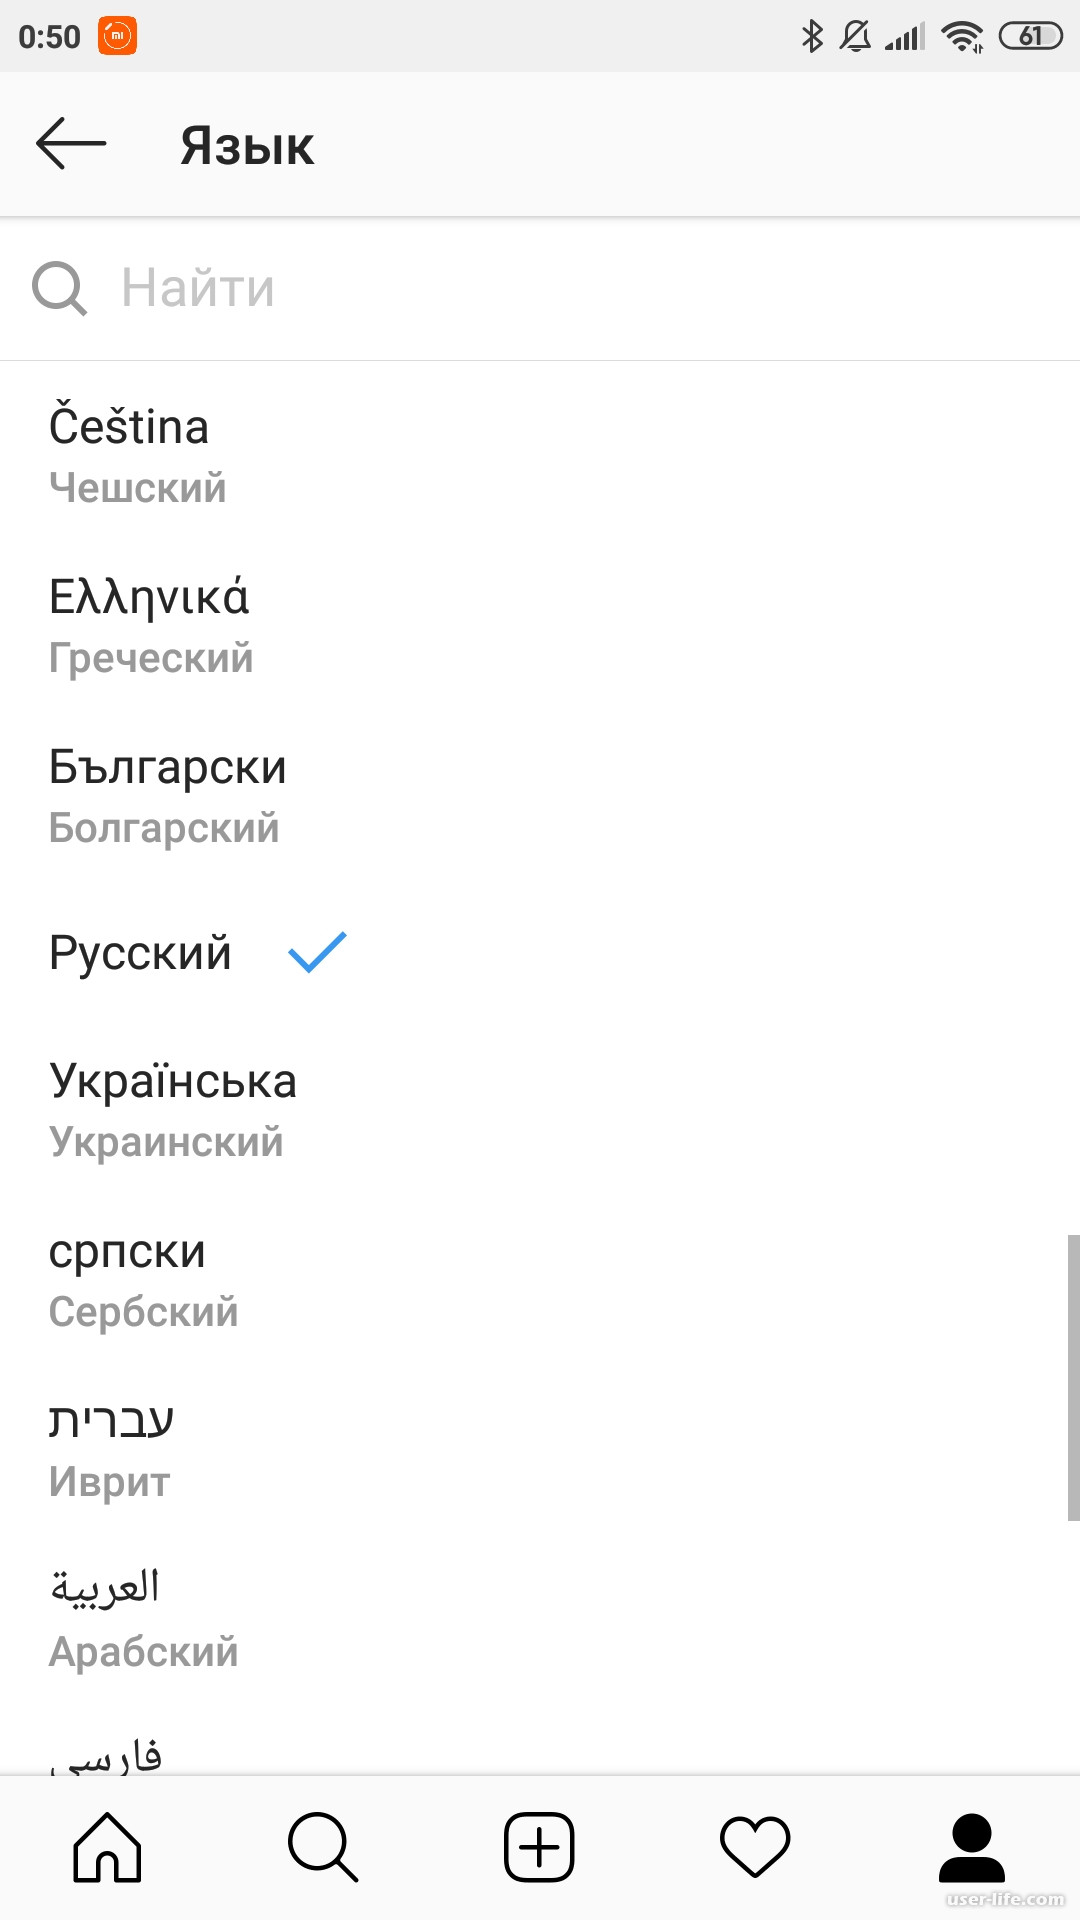 Как поменять в телеграмме язык на русский на андроиде с английского на русский фото 79